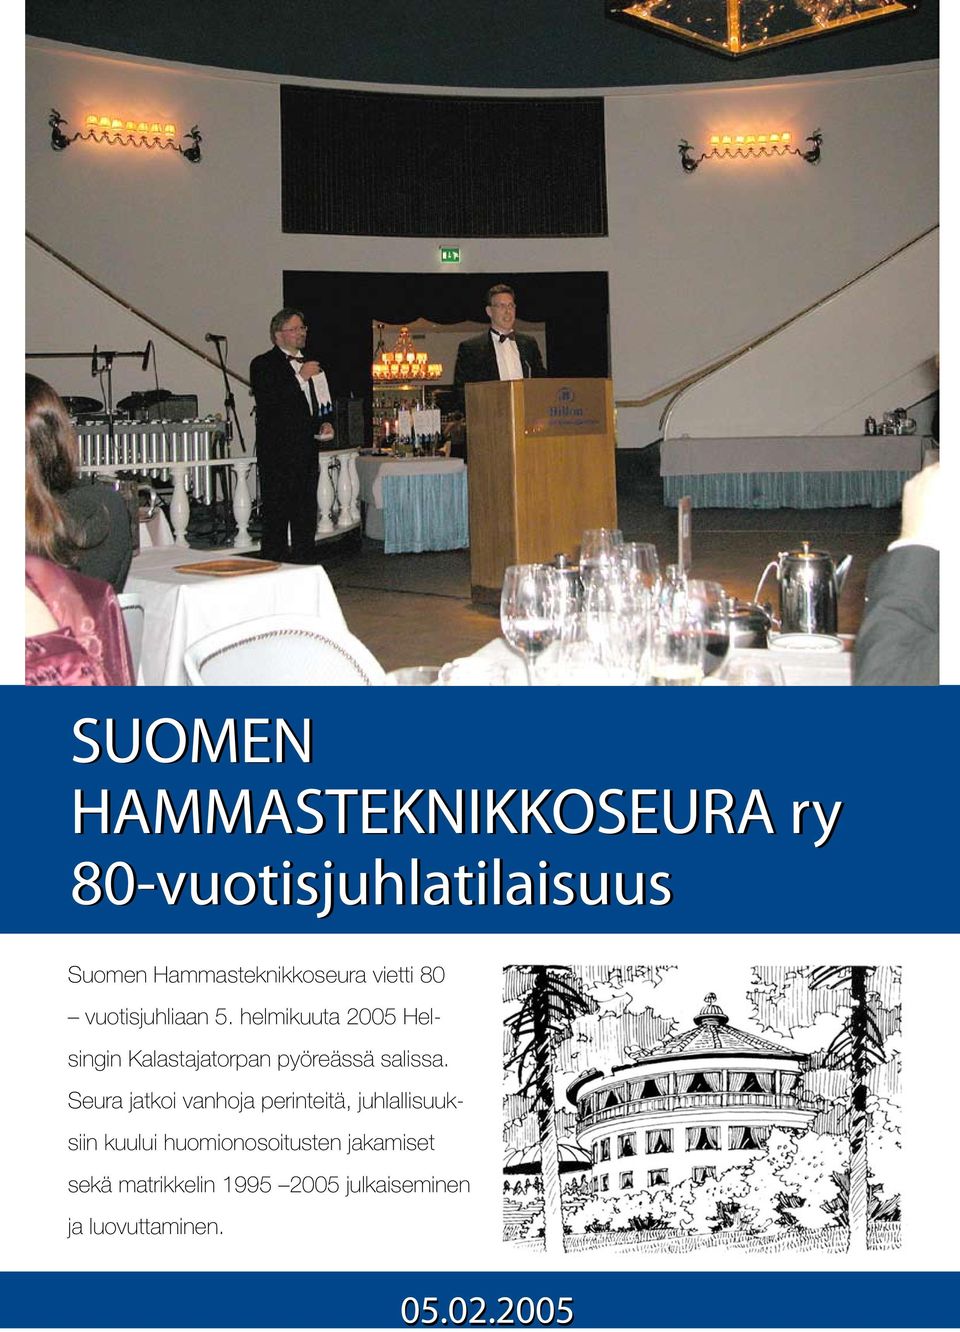 helmikuuta 2005 Helsingin Kalastajatorpan pyöreässä salissa.